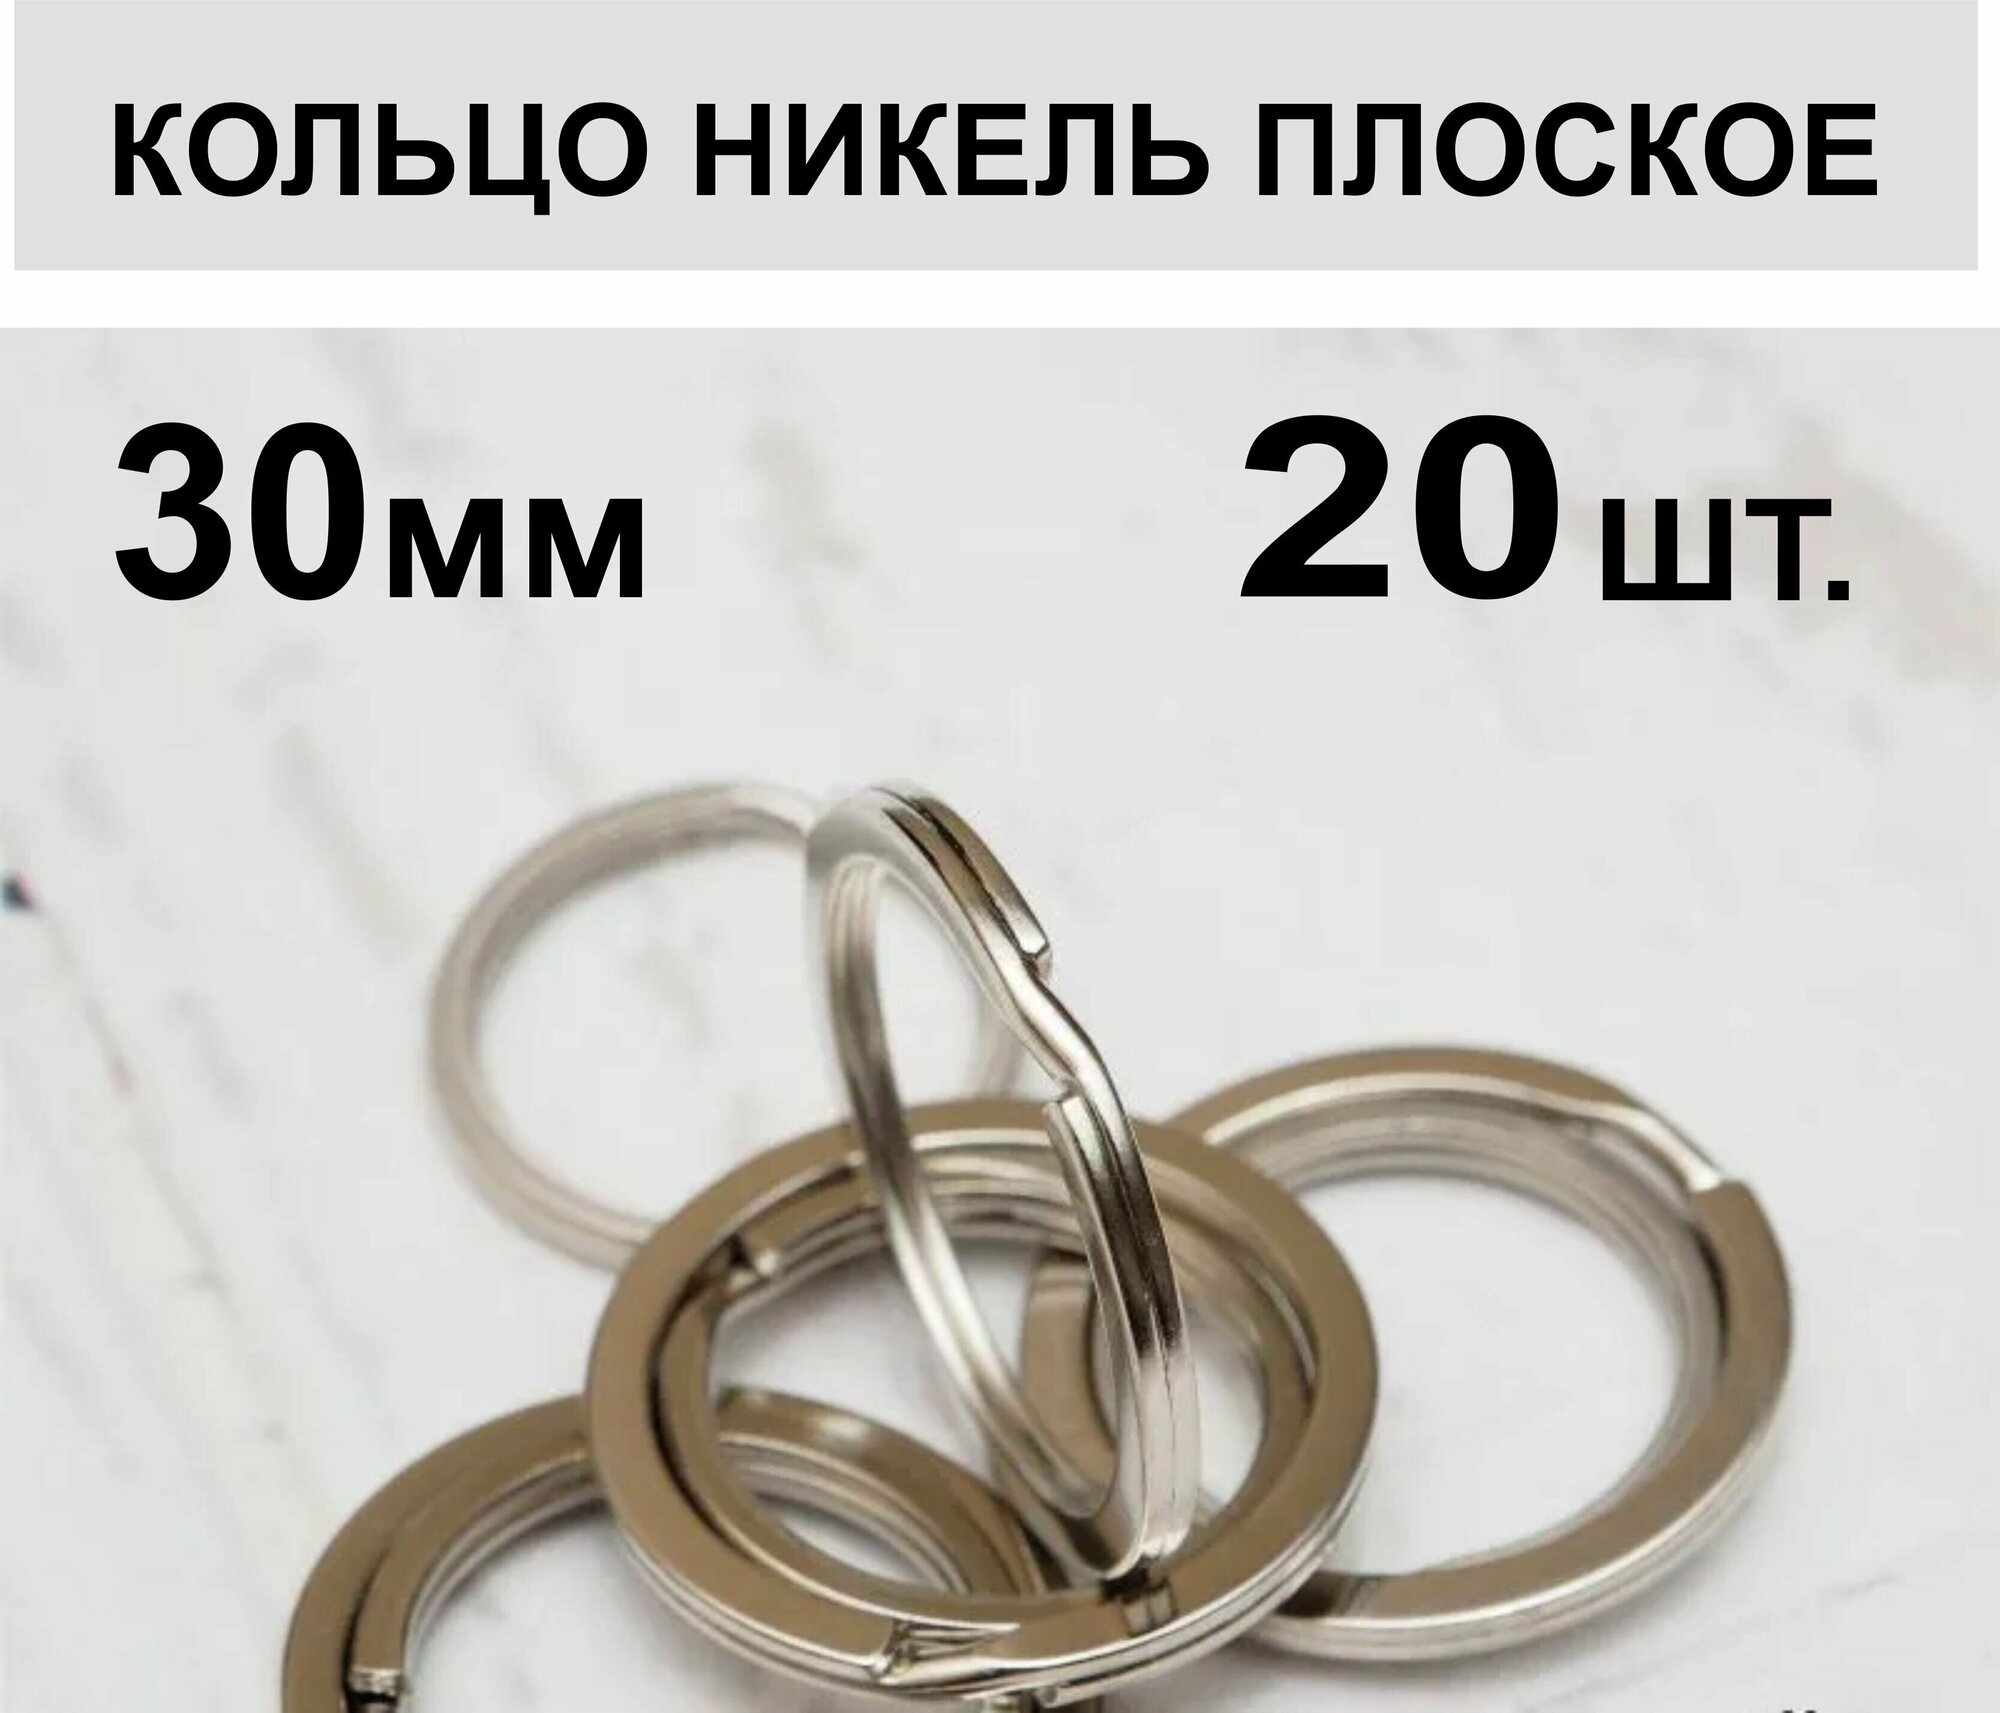 Кольцо для ключей, плоское 30 мм, 20 шт.